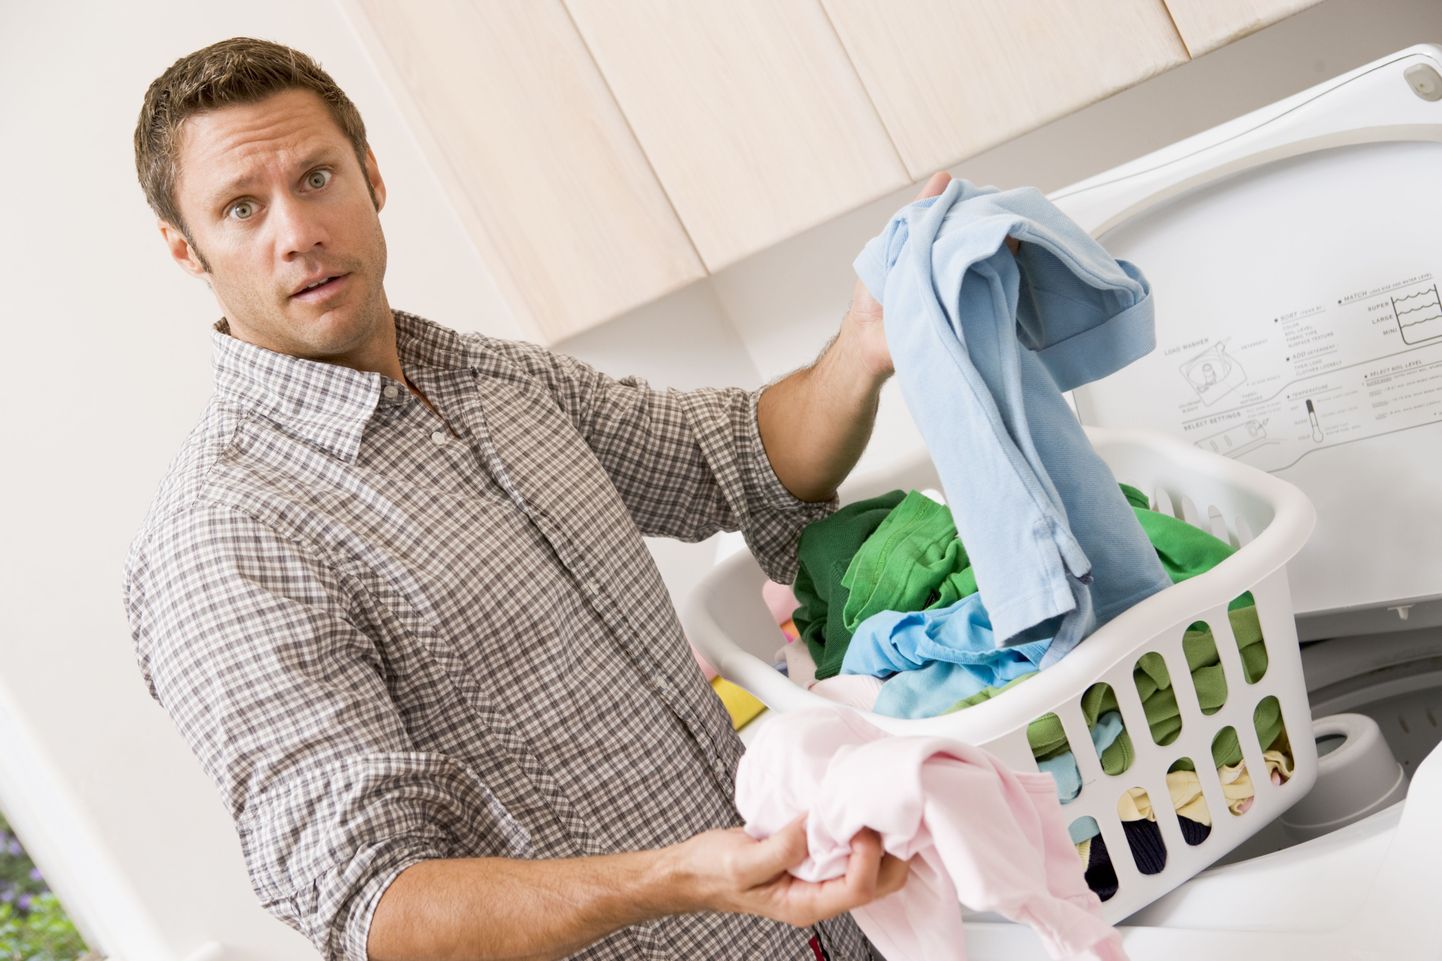 Pesu pesev mees on Eestis harv nähtus - 80 protsenti Eesti naisest hoolisteb rõivaste ja pesu korrashoiu eest.